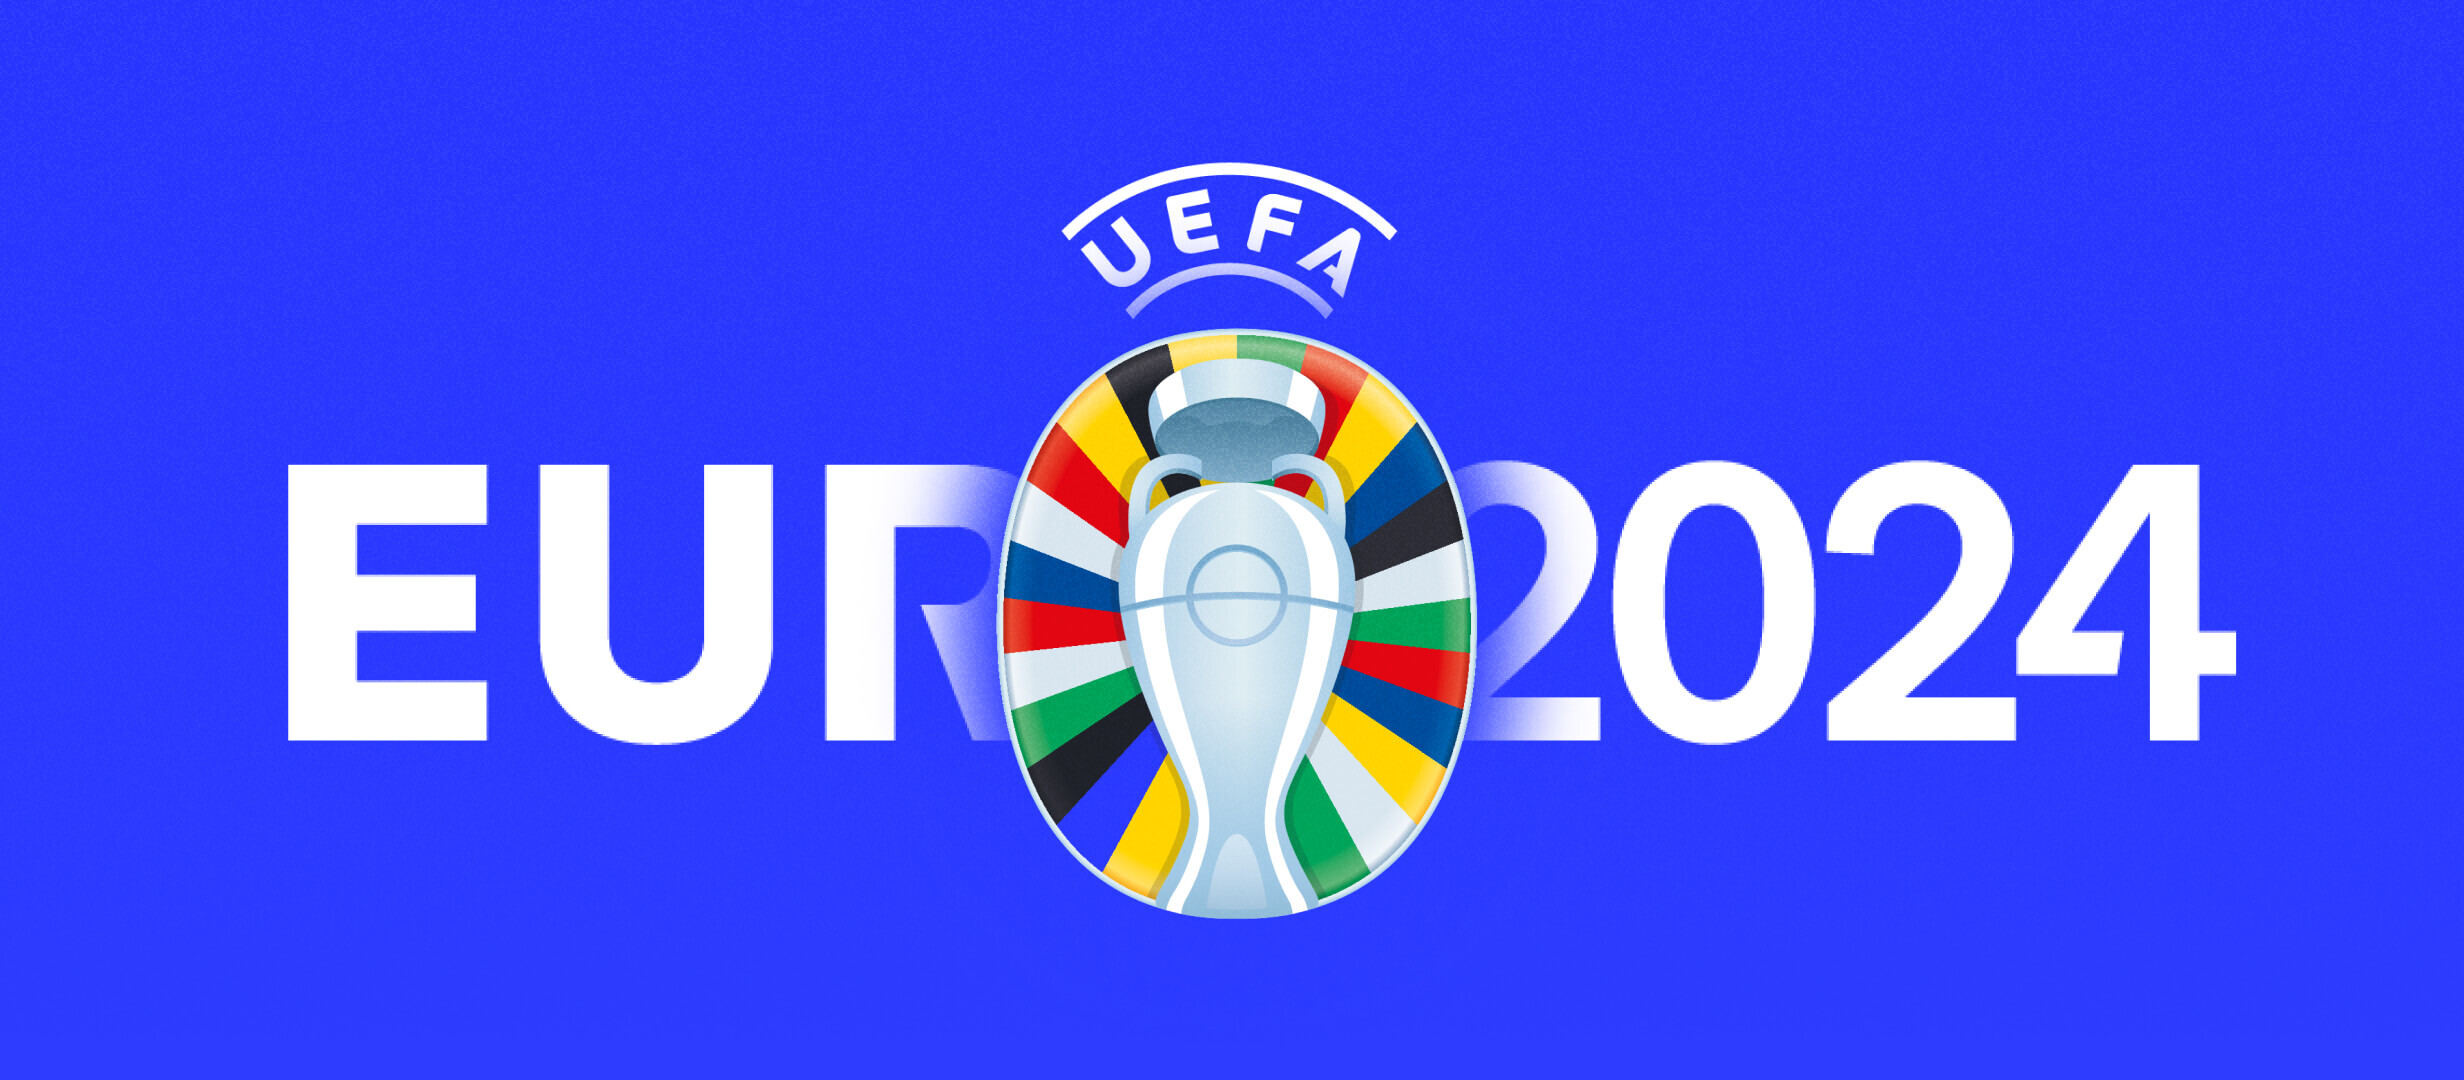 Clasificación EURO 2024: a qué apostar en la última ronda